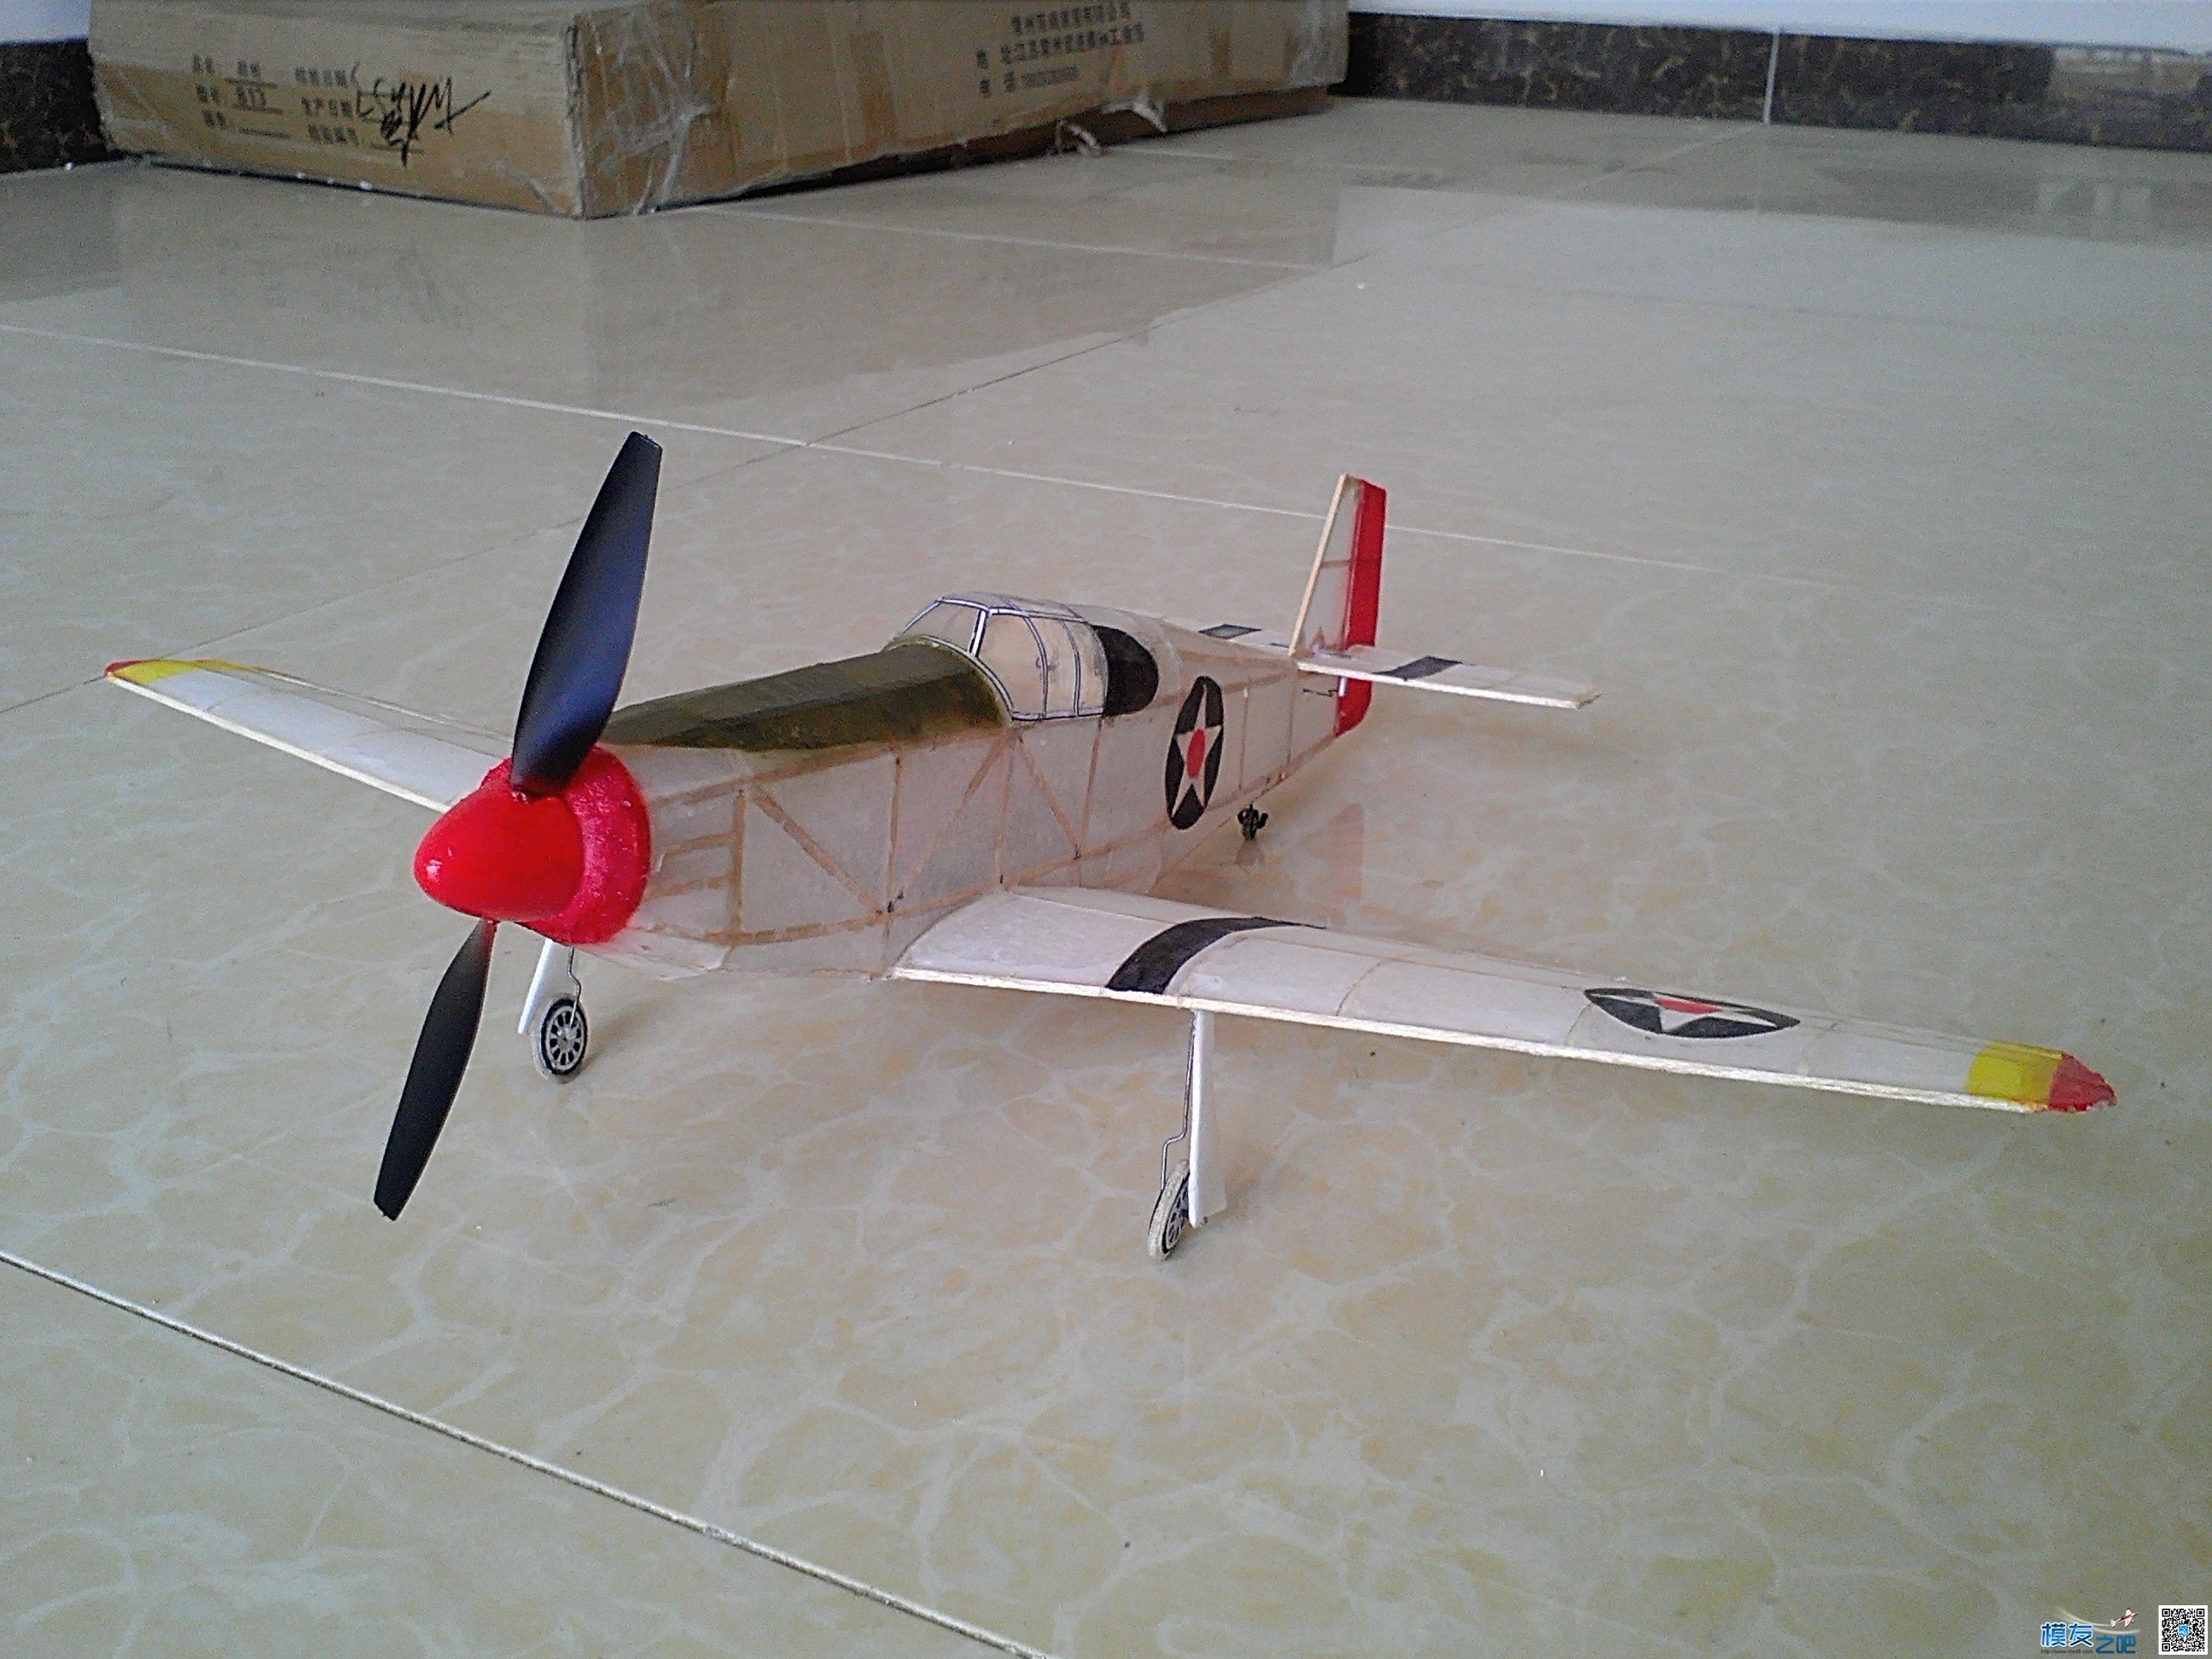 迷你轻木机野马P51a 固定翼,舵机,图纸,接收机 作者:飞翔的橡皮筋 5671 